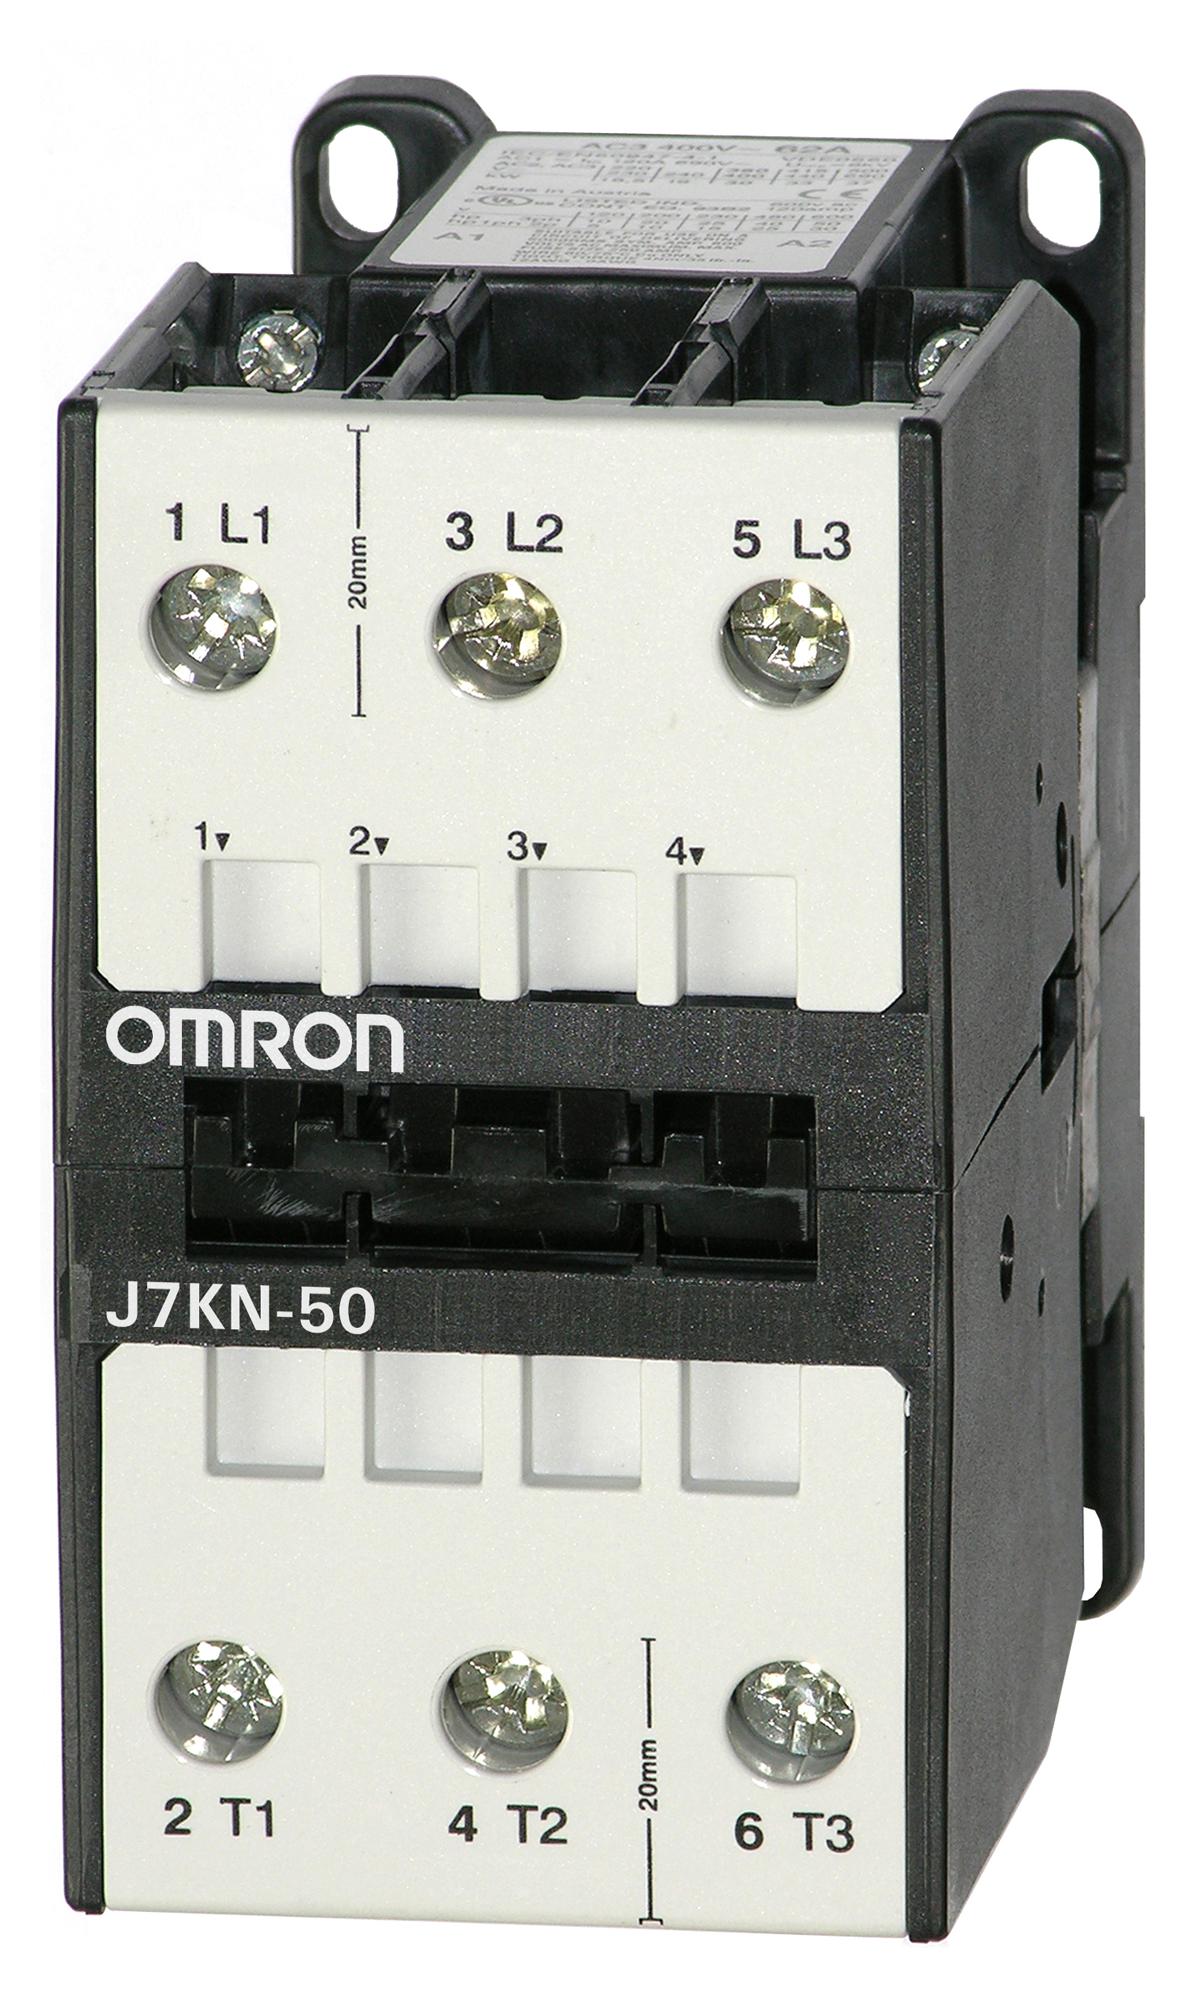 J7KN-50 24 CONTACTORS RELAYS OMRON